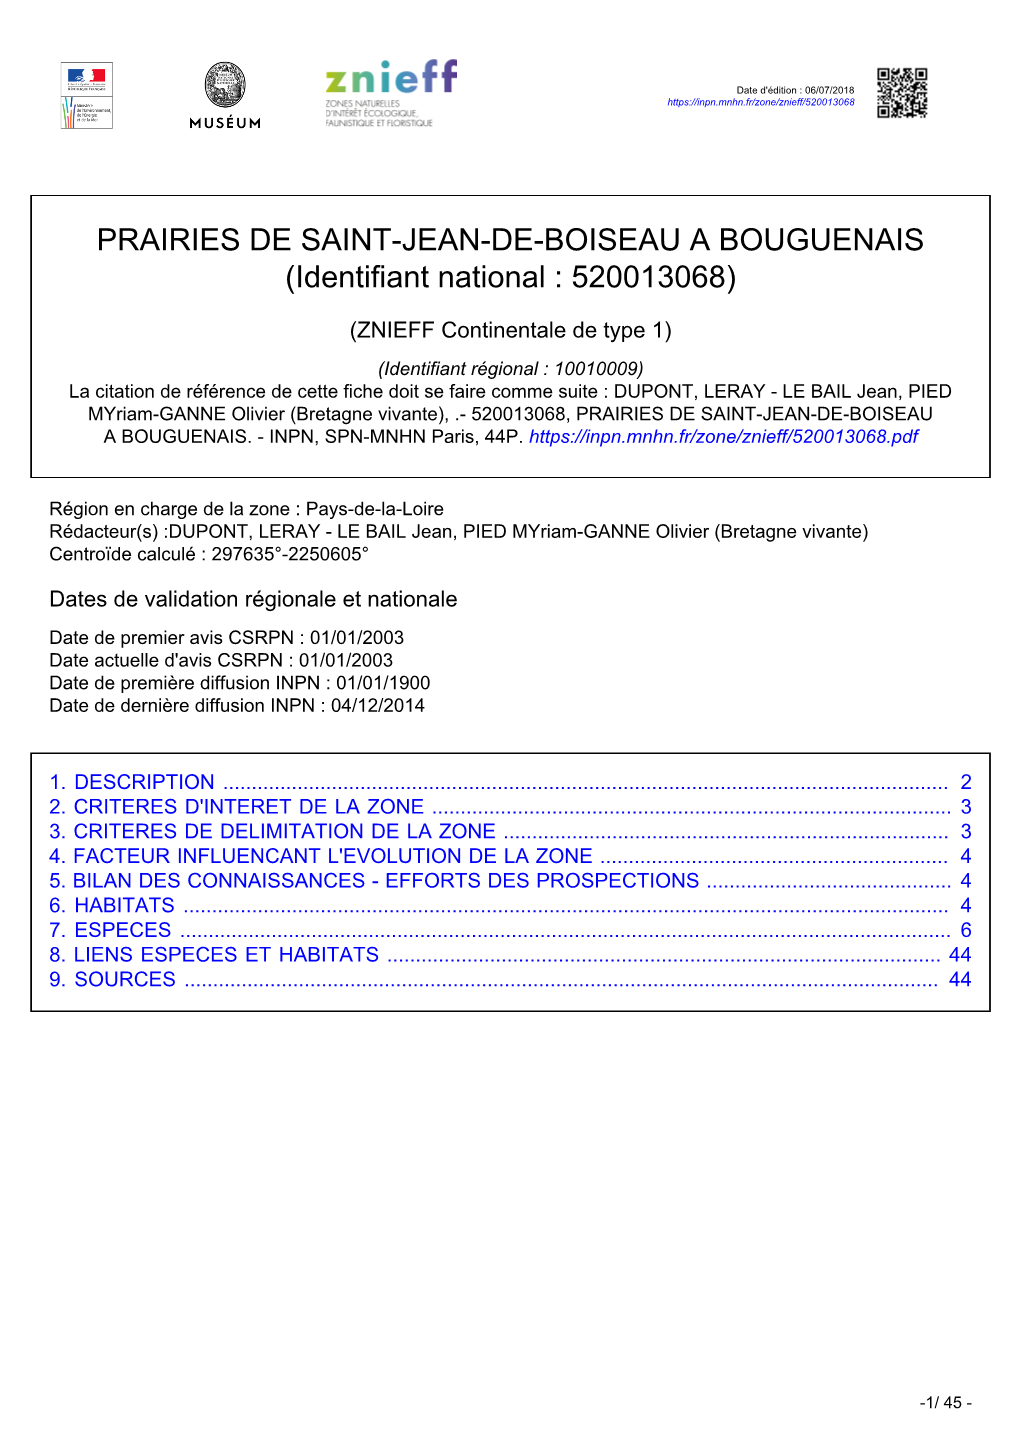 PRAIRIES DE SAINT-JEAN-DE-BOISEAU a BOUGUENAIS (Identifiant National : 520013068)